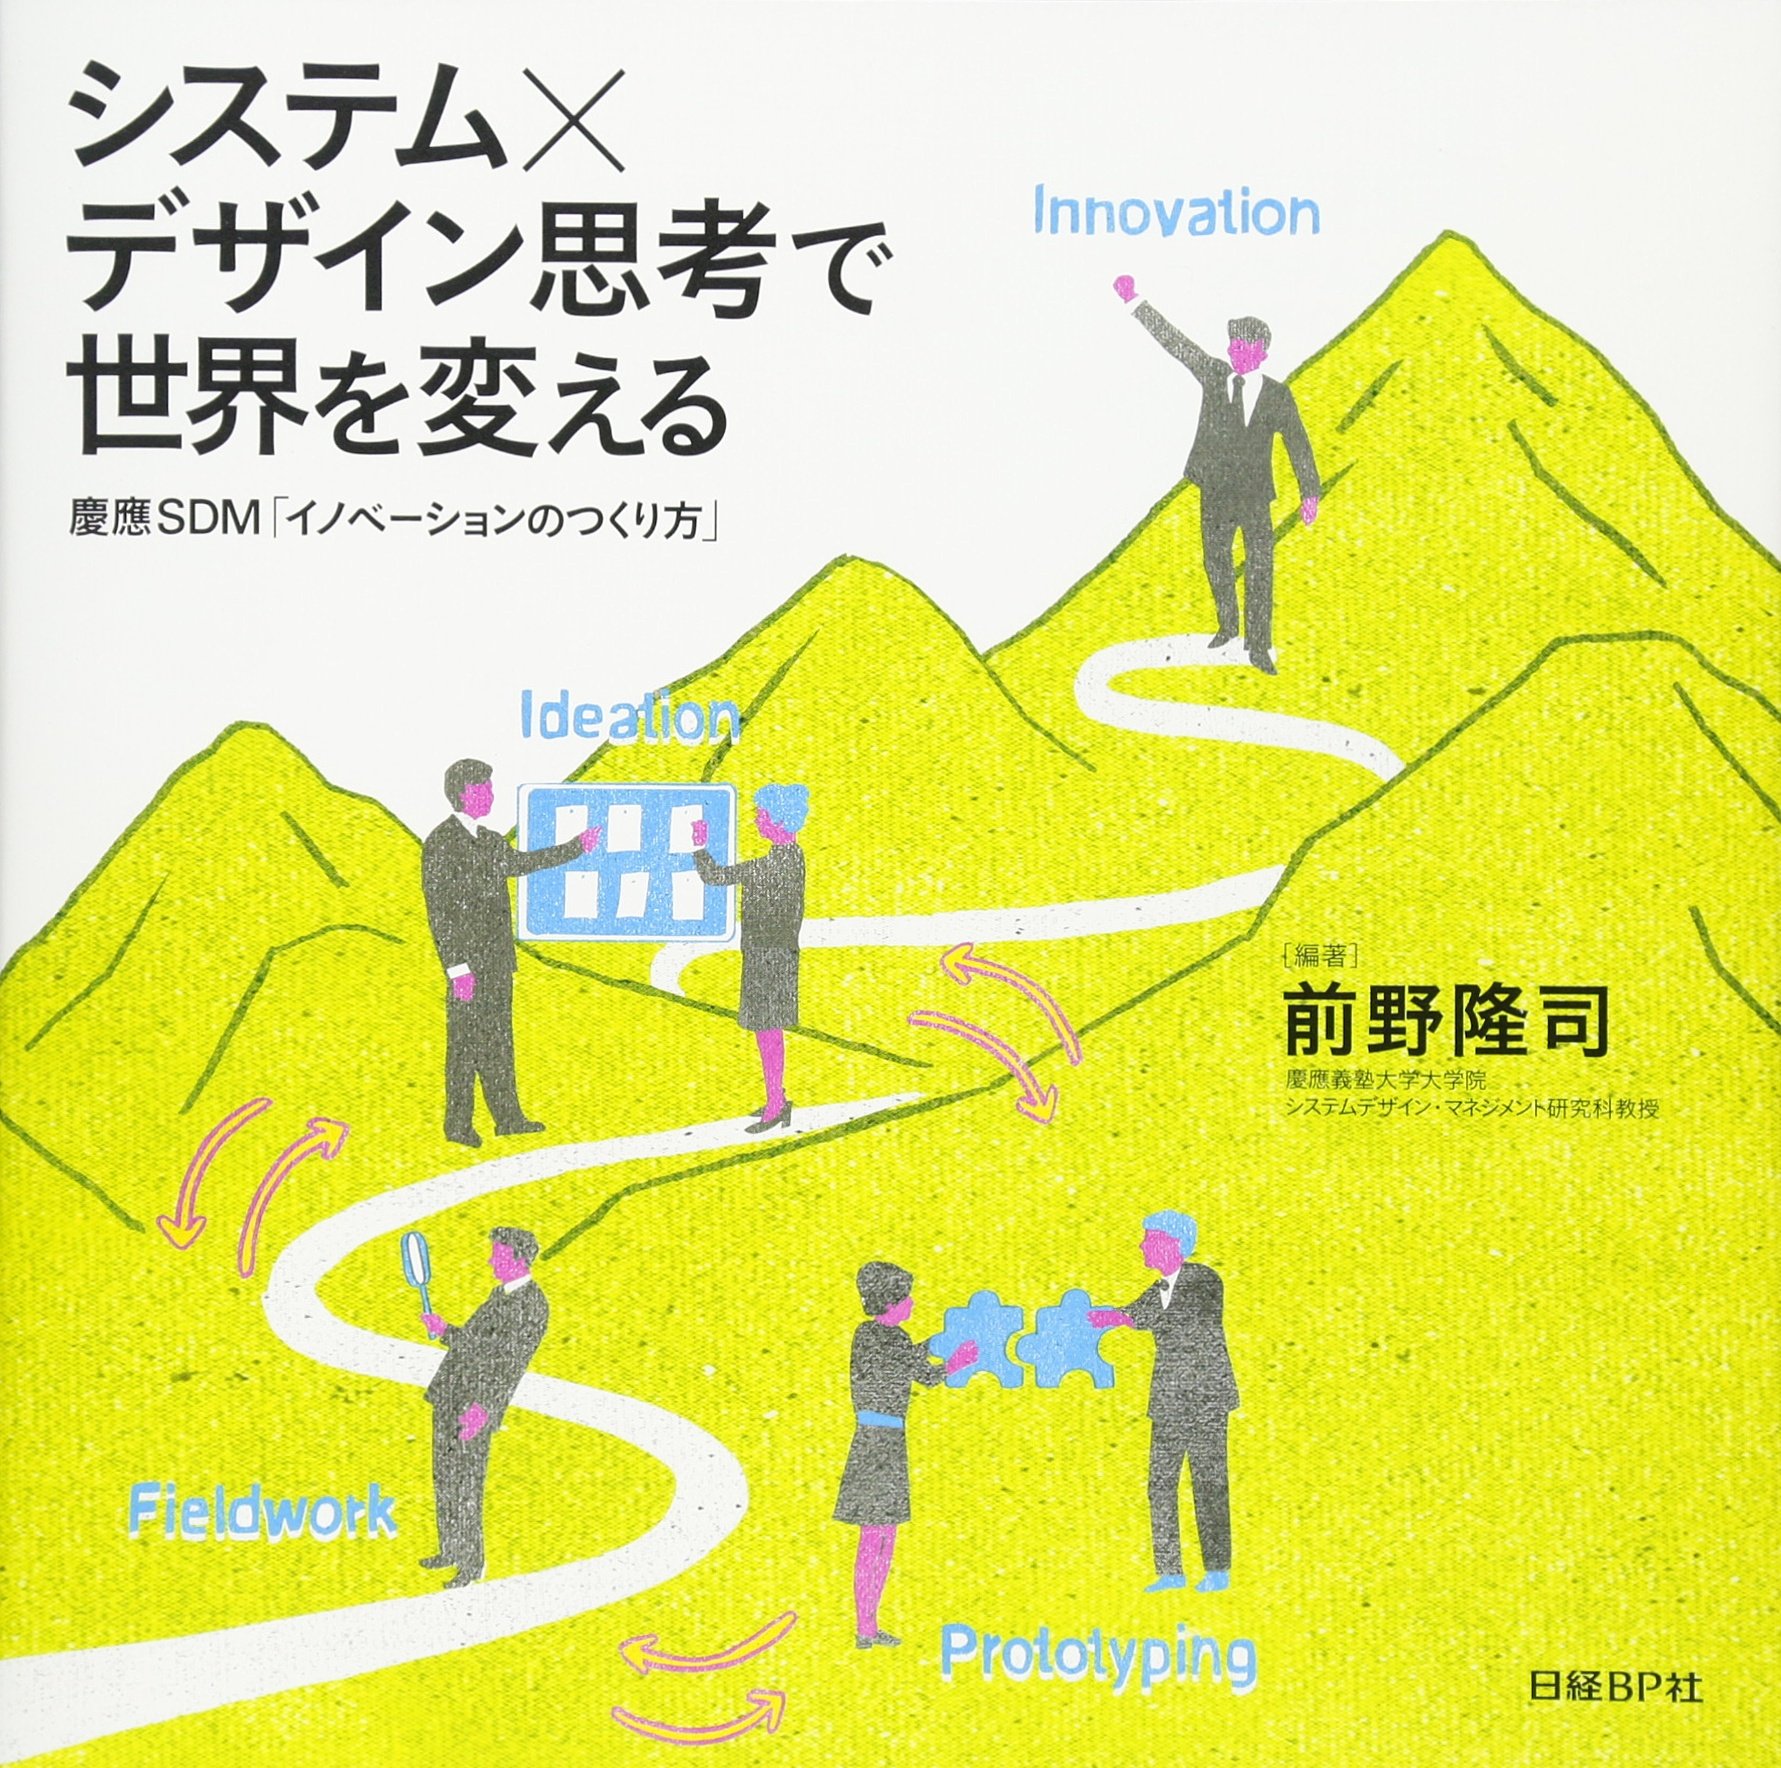 システム×デザイン思考で世界を変える 慶應SDM「イノベーションのつくり方」